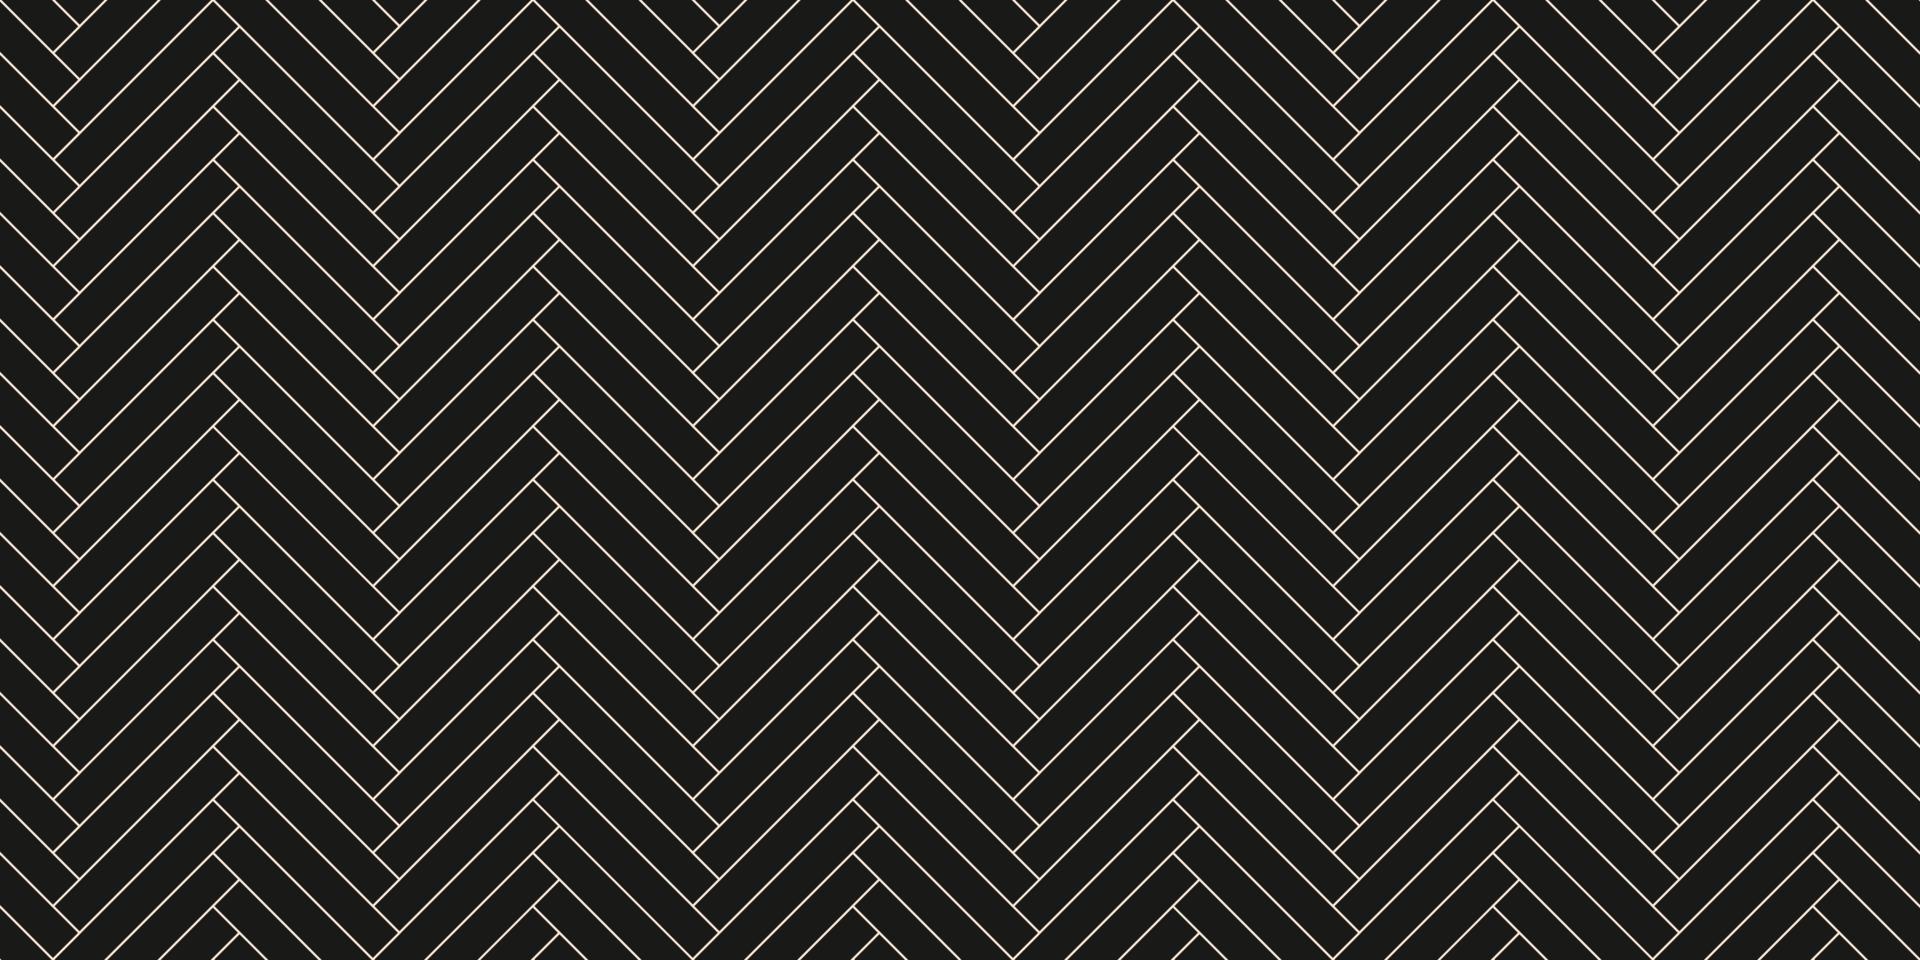 Are Black Herringbone Tiles Easy to Clean?